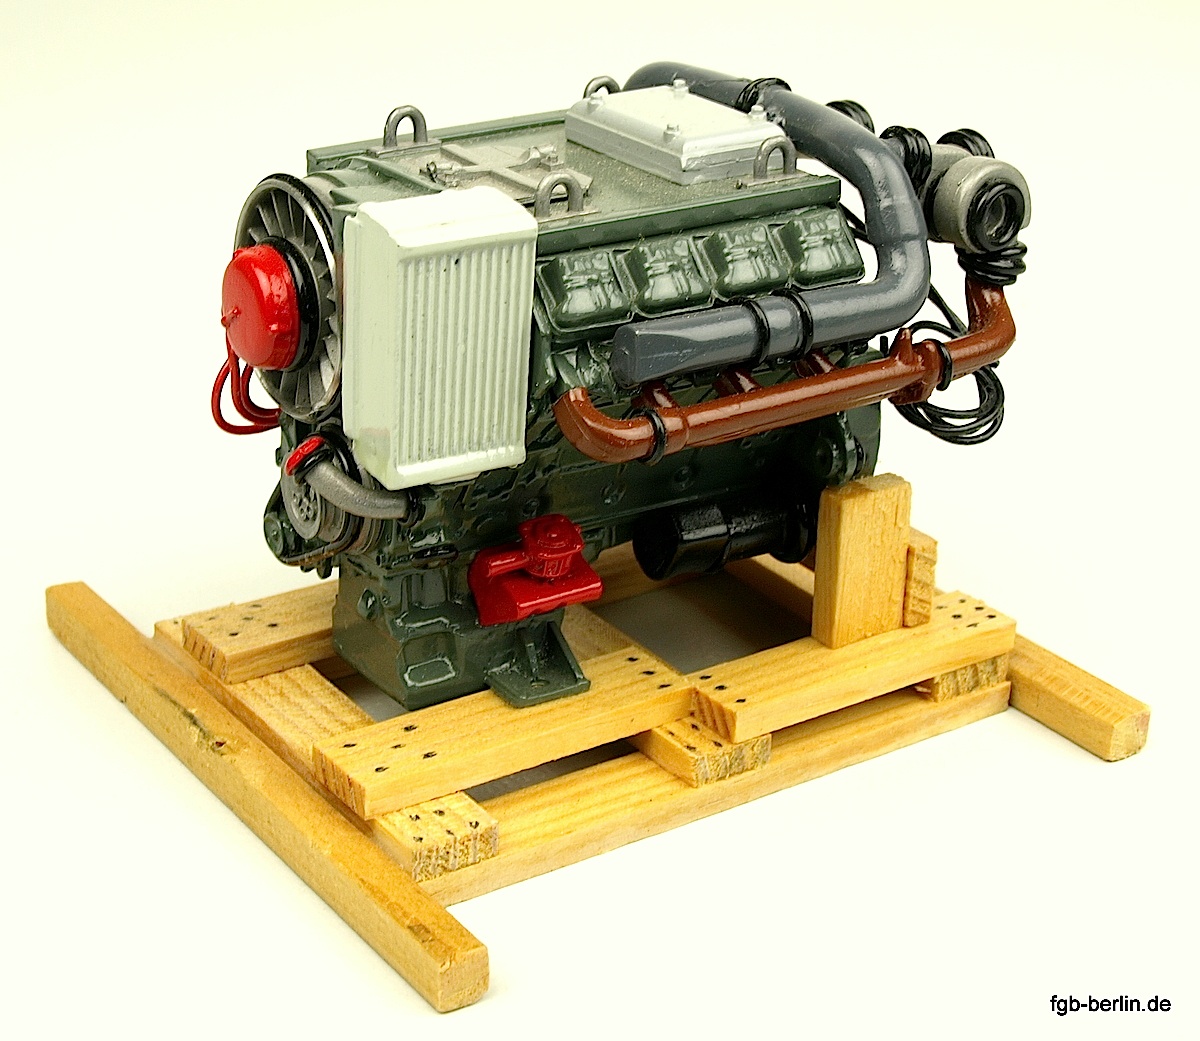 Acht Zylinder Motor (Eight cylinder engine)